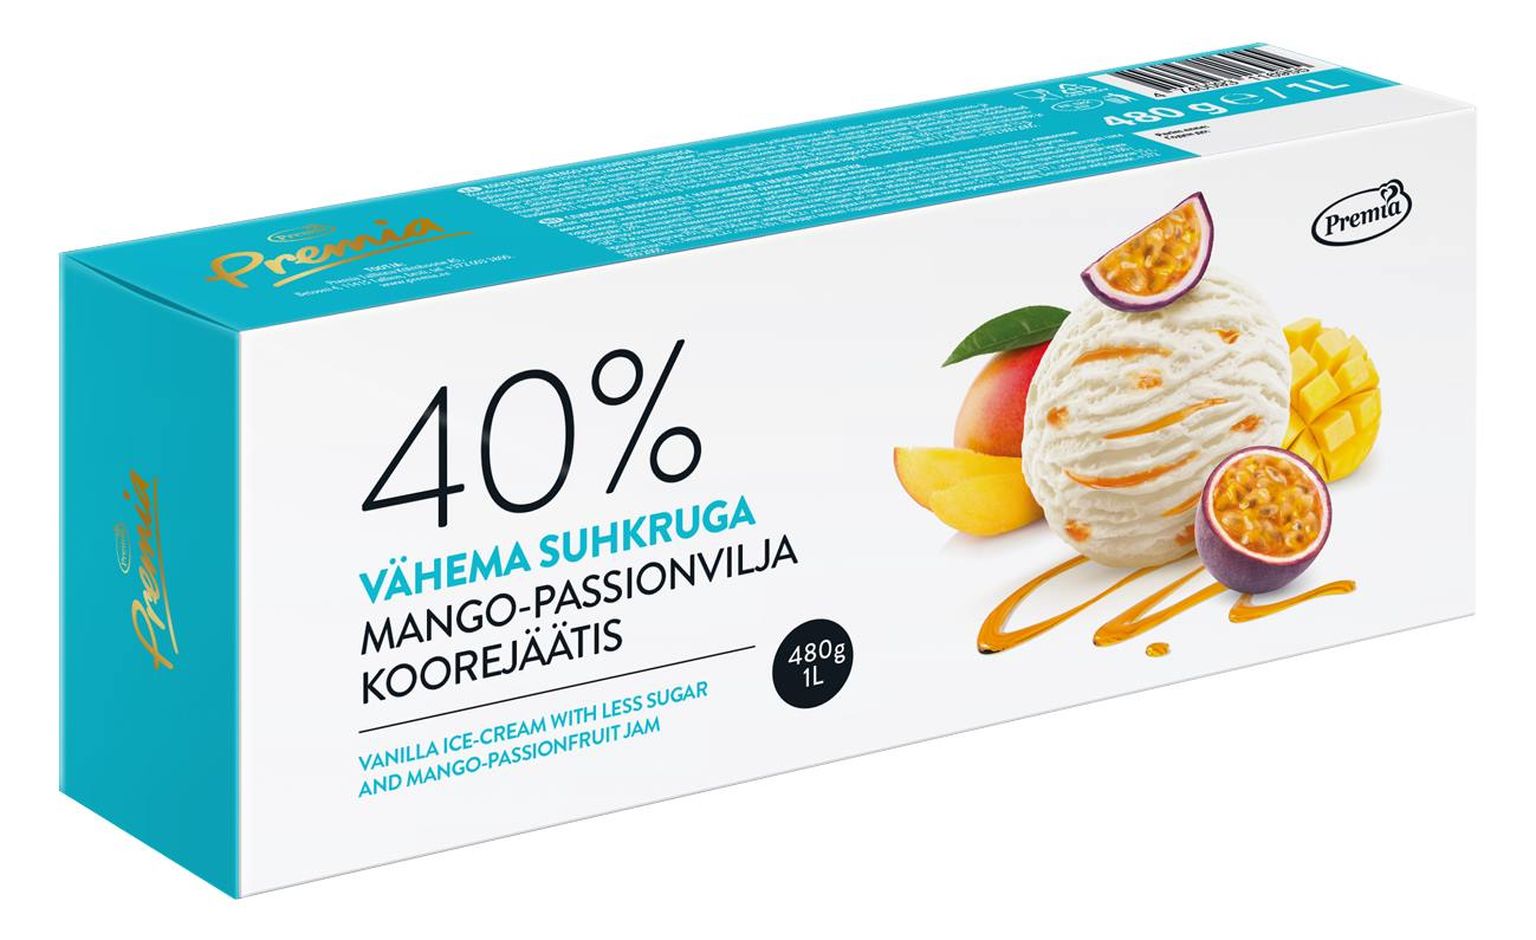 Eesti Parim Toiduaine 2020 on Premia mango-passionvilja koorejäätis, mis pälvis Toiduliidu konkursil ka parima magustoidu hõbemärgi.